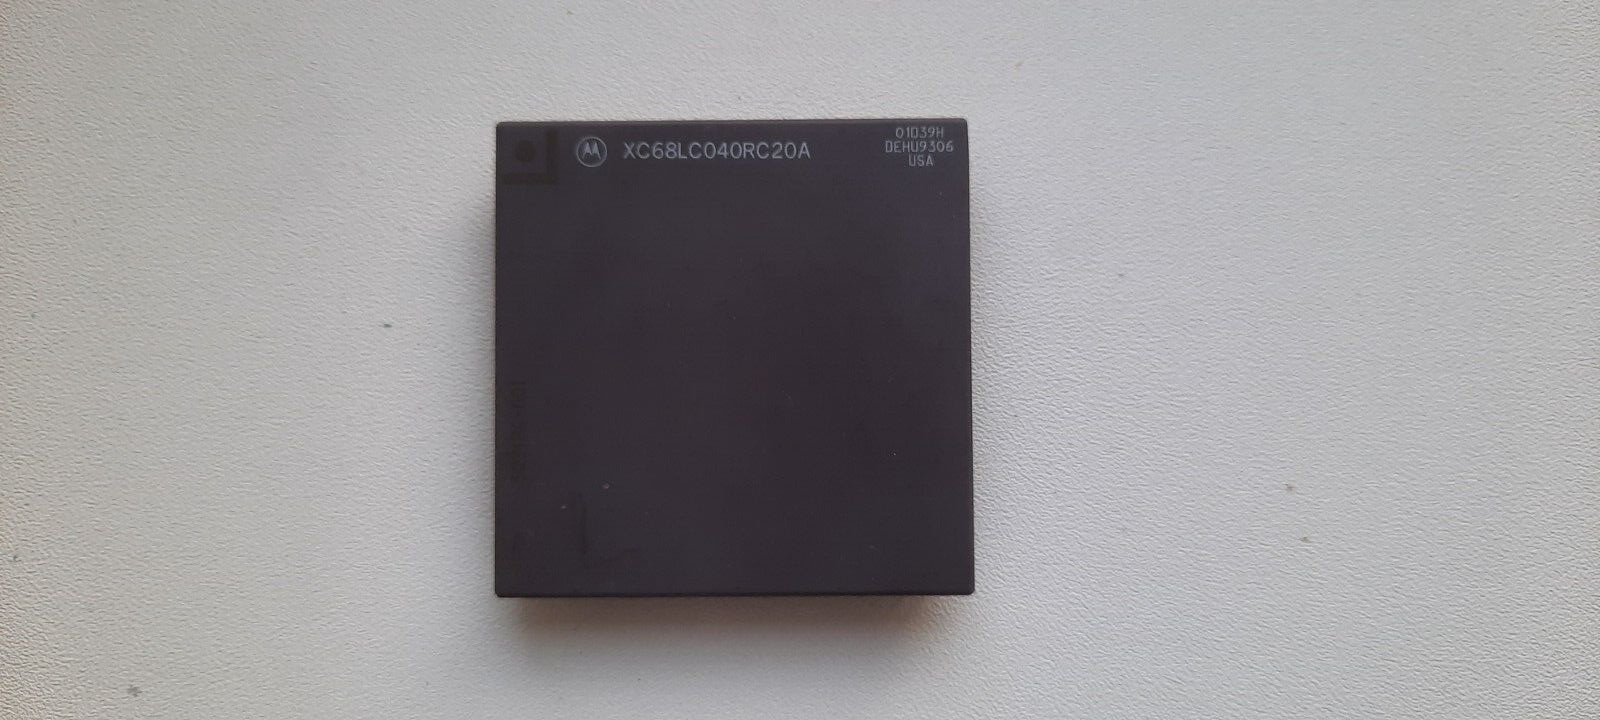 Motorola XC68LC040RC20A 01D39H 68040 rare vintage CPU AMIGA GOLD